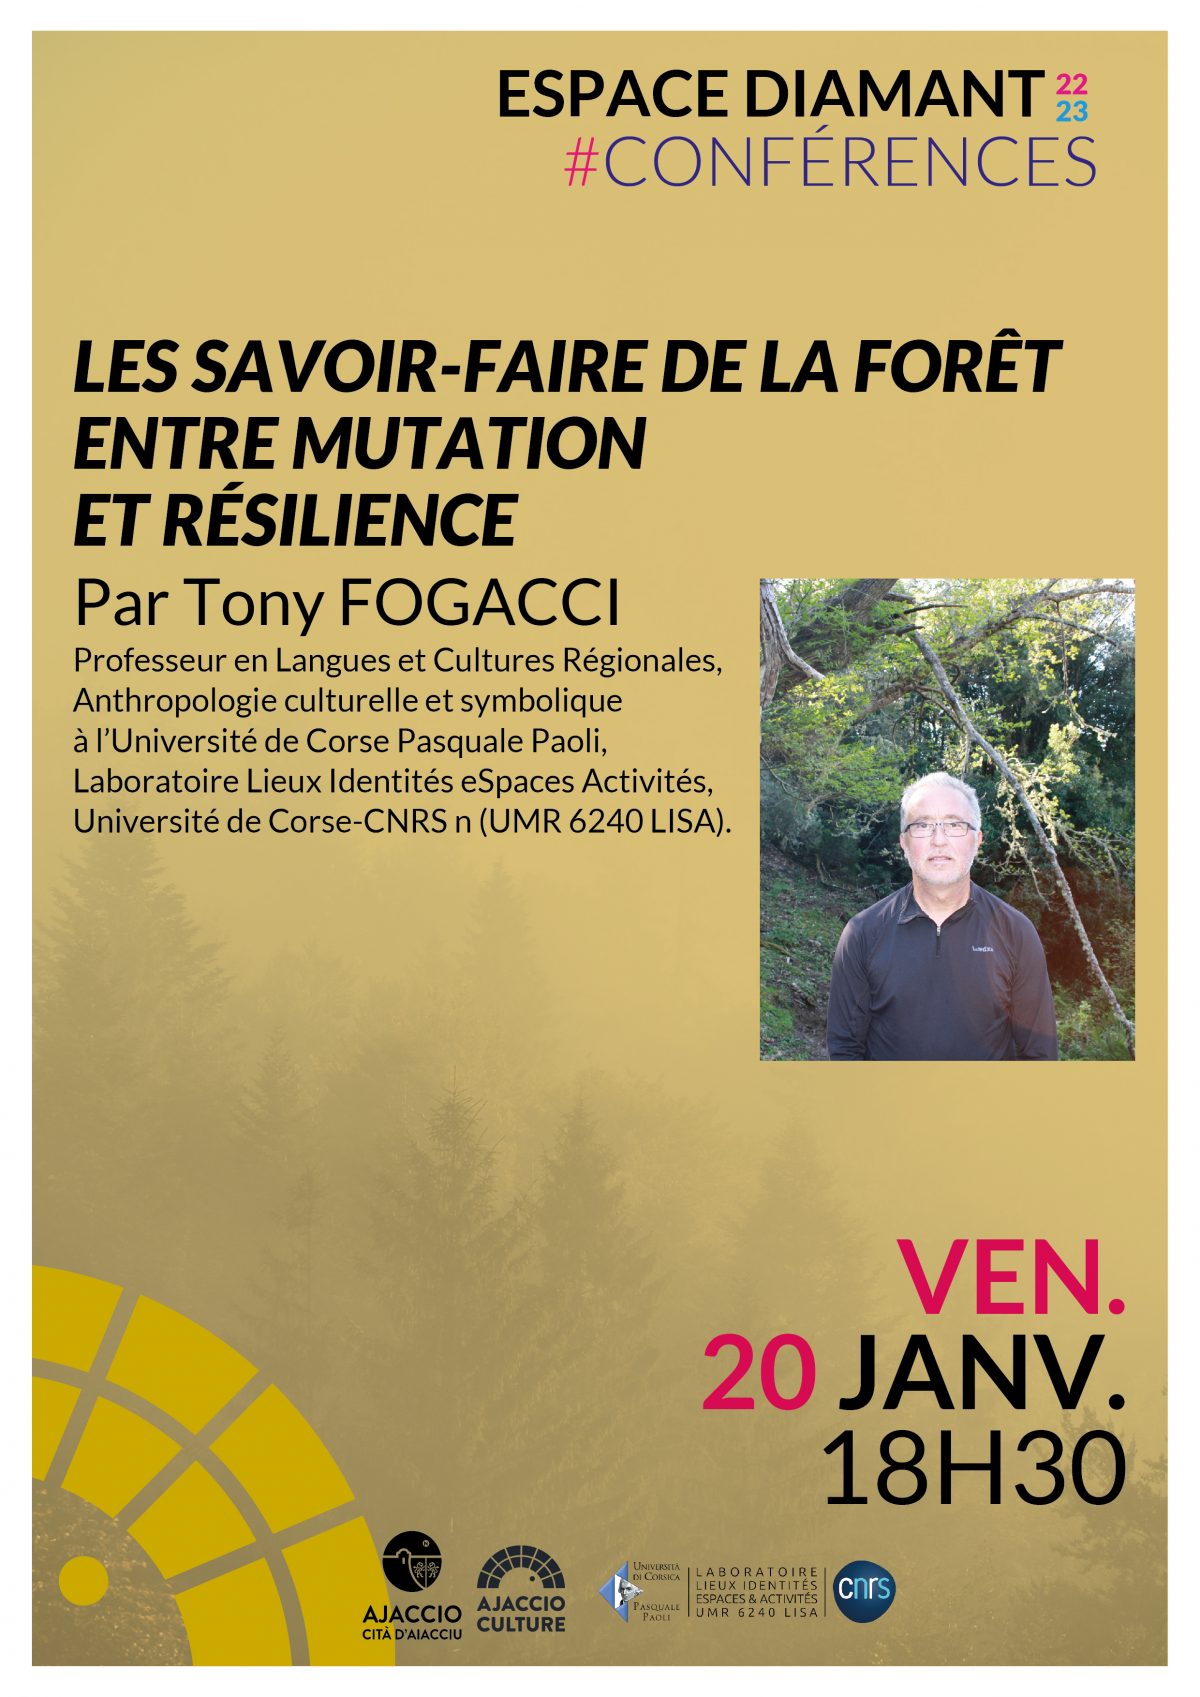 Les savoir-faire de la forêt entre mutation et résilience par Tony Fogacci